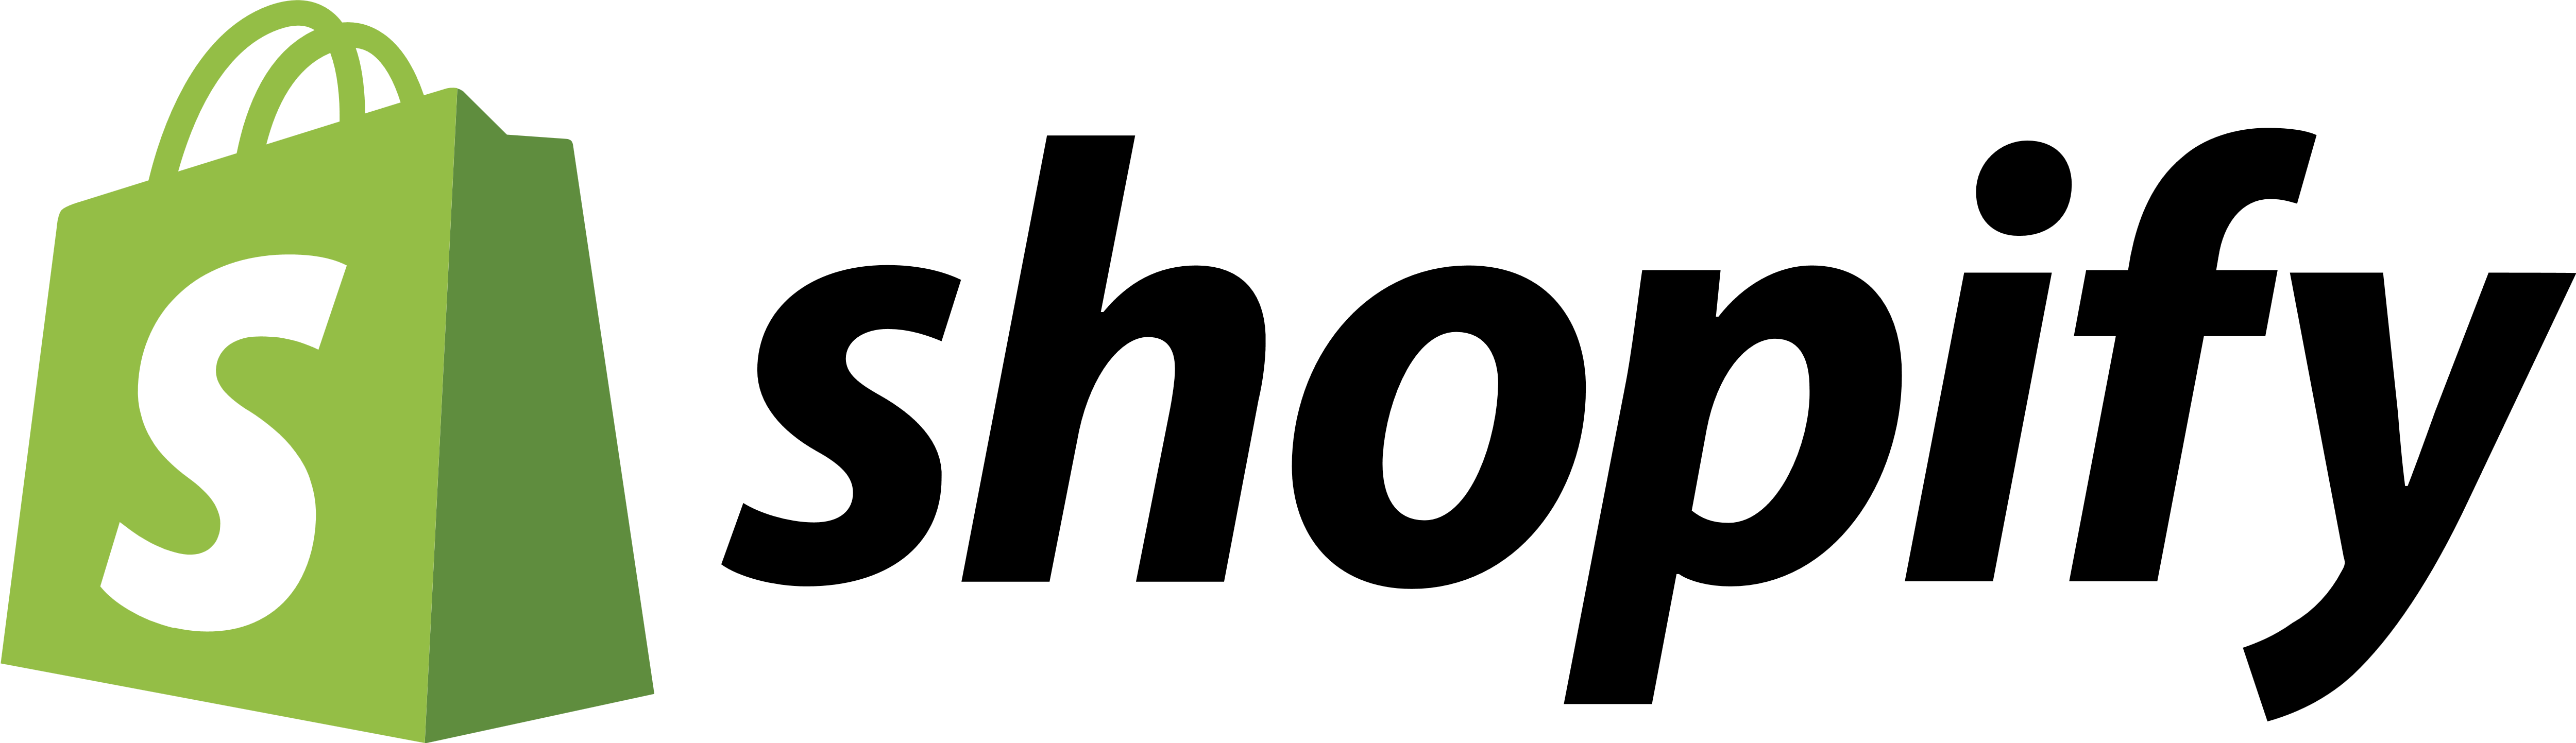 shopify.png Logo